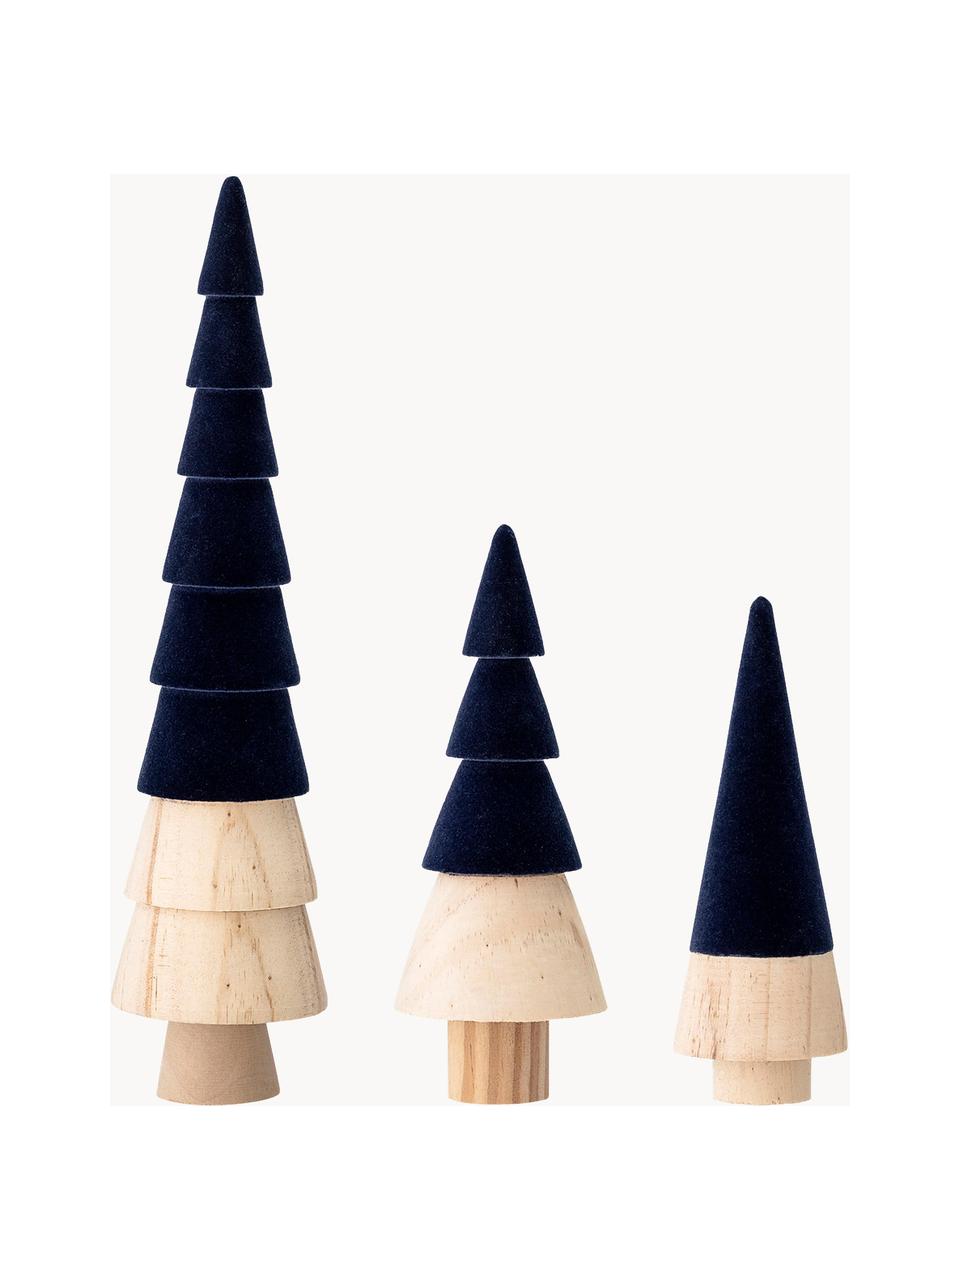 Samt-Deko-Bäume-Set Thace, 3er-Set, Holz, Polyestersamt, Dunkelblau, Holz, Set mit verschiedenen Größen